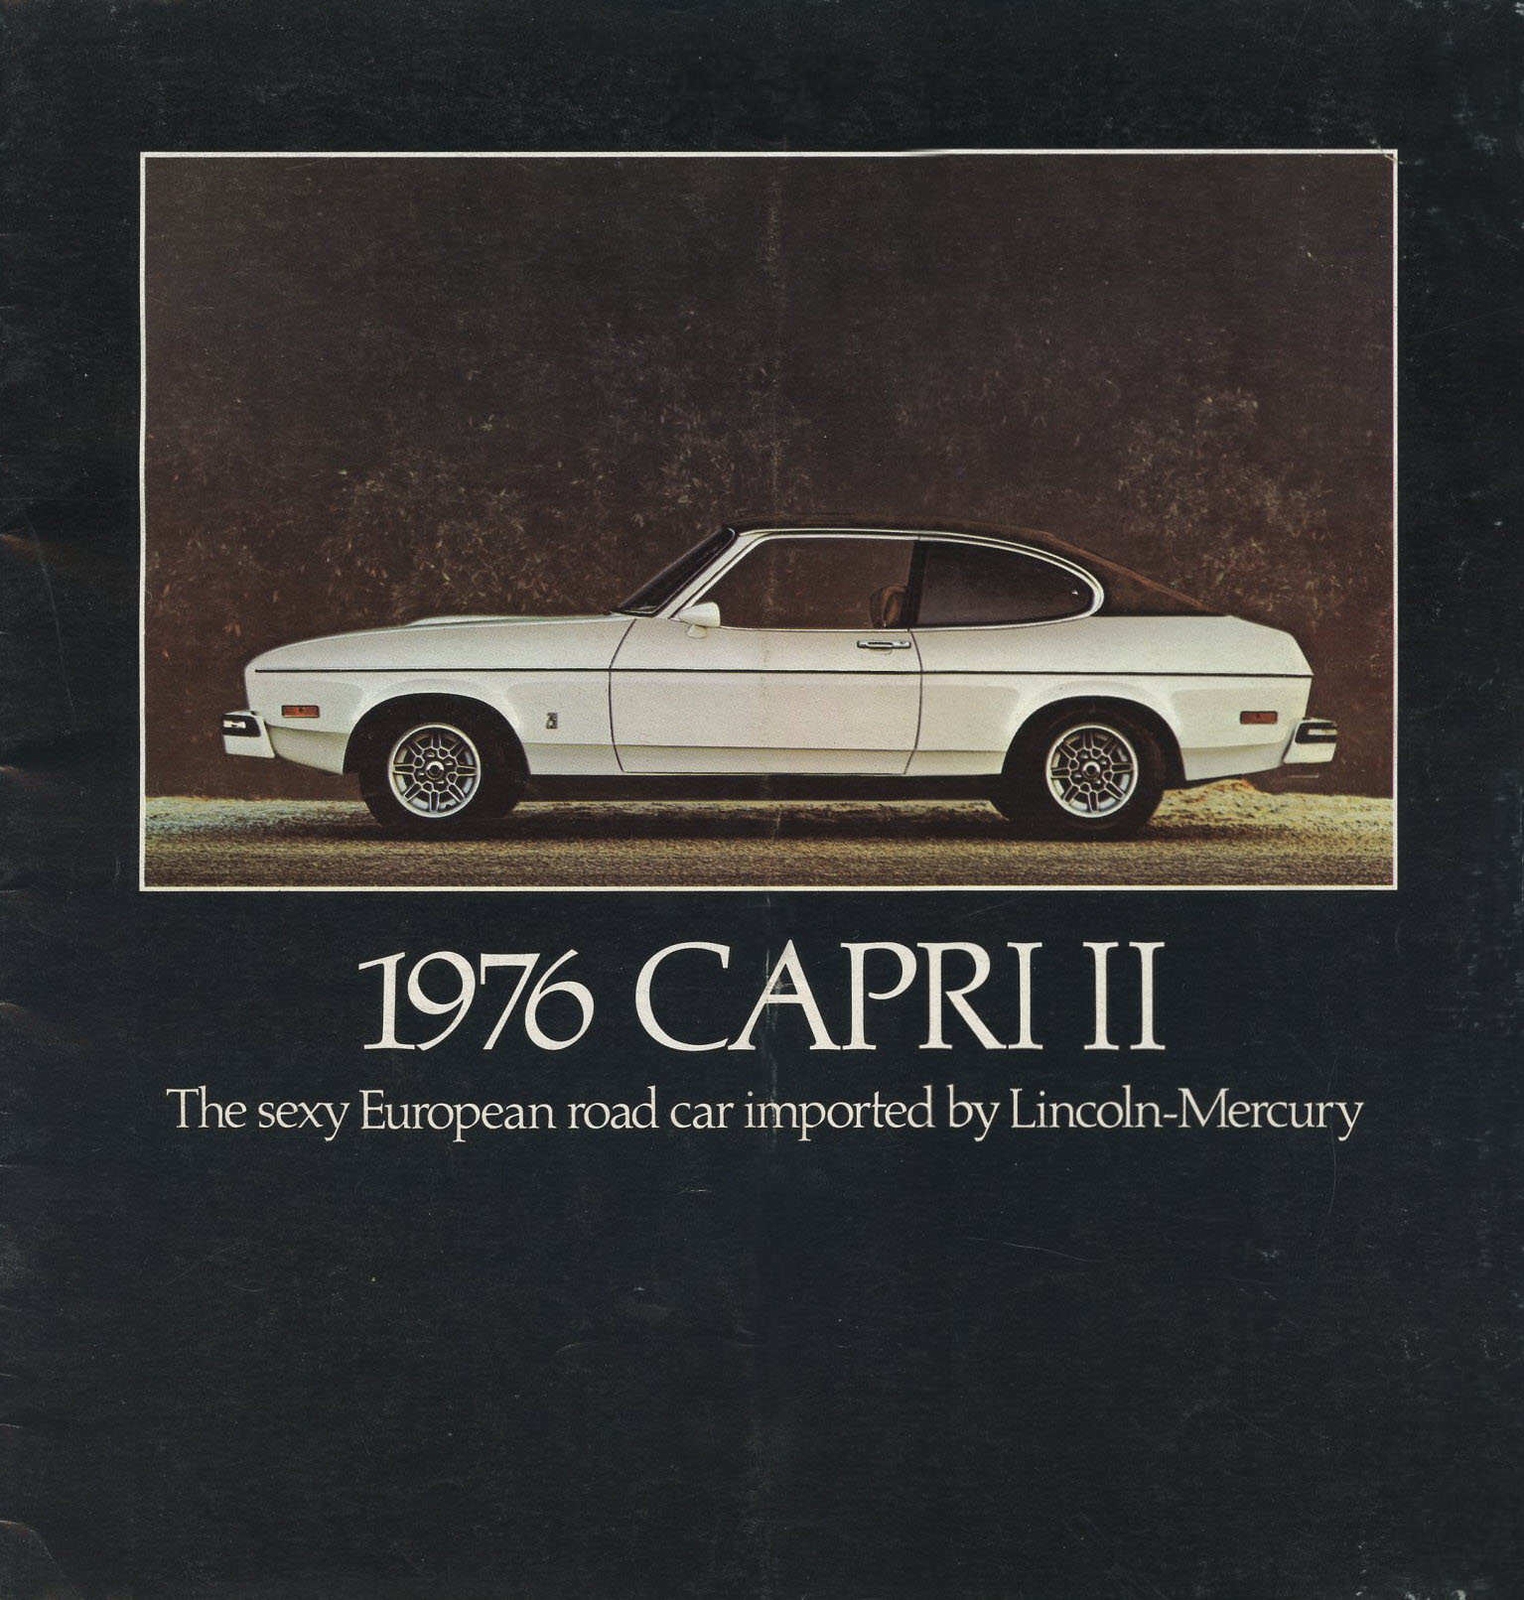 n_1976 Capri II-01.jpg